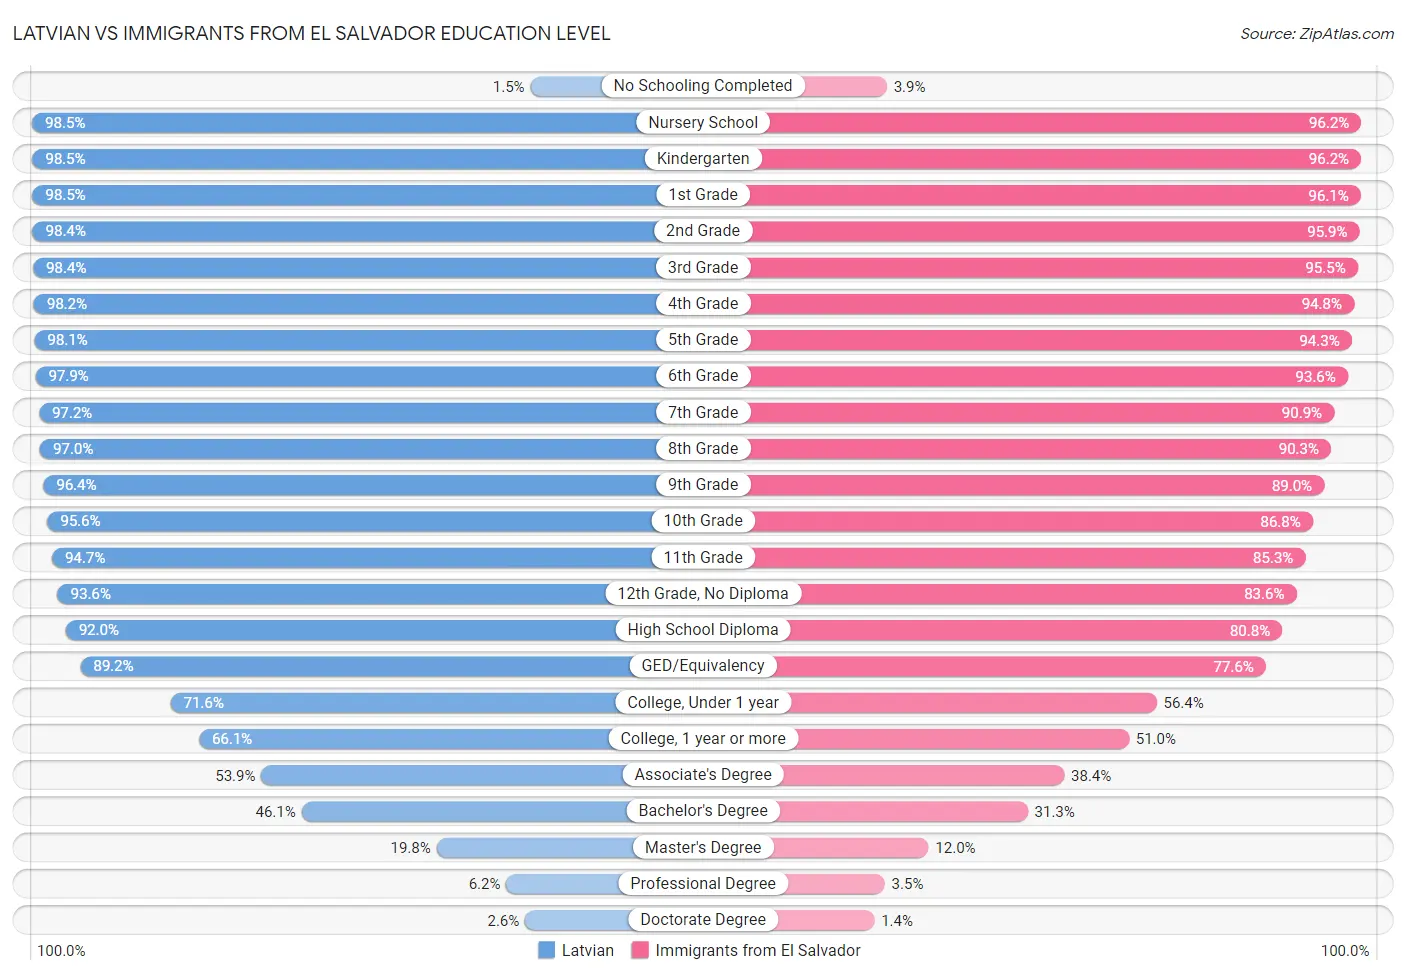 Latvian vs Immigrants from El Salvador Education Level